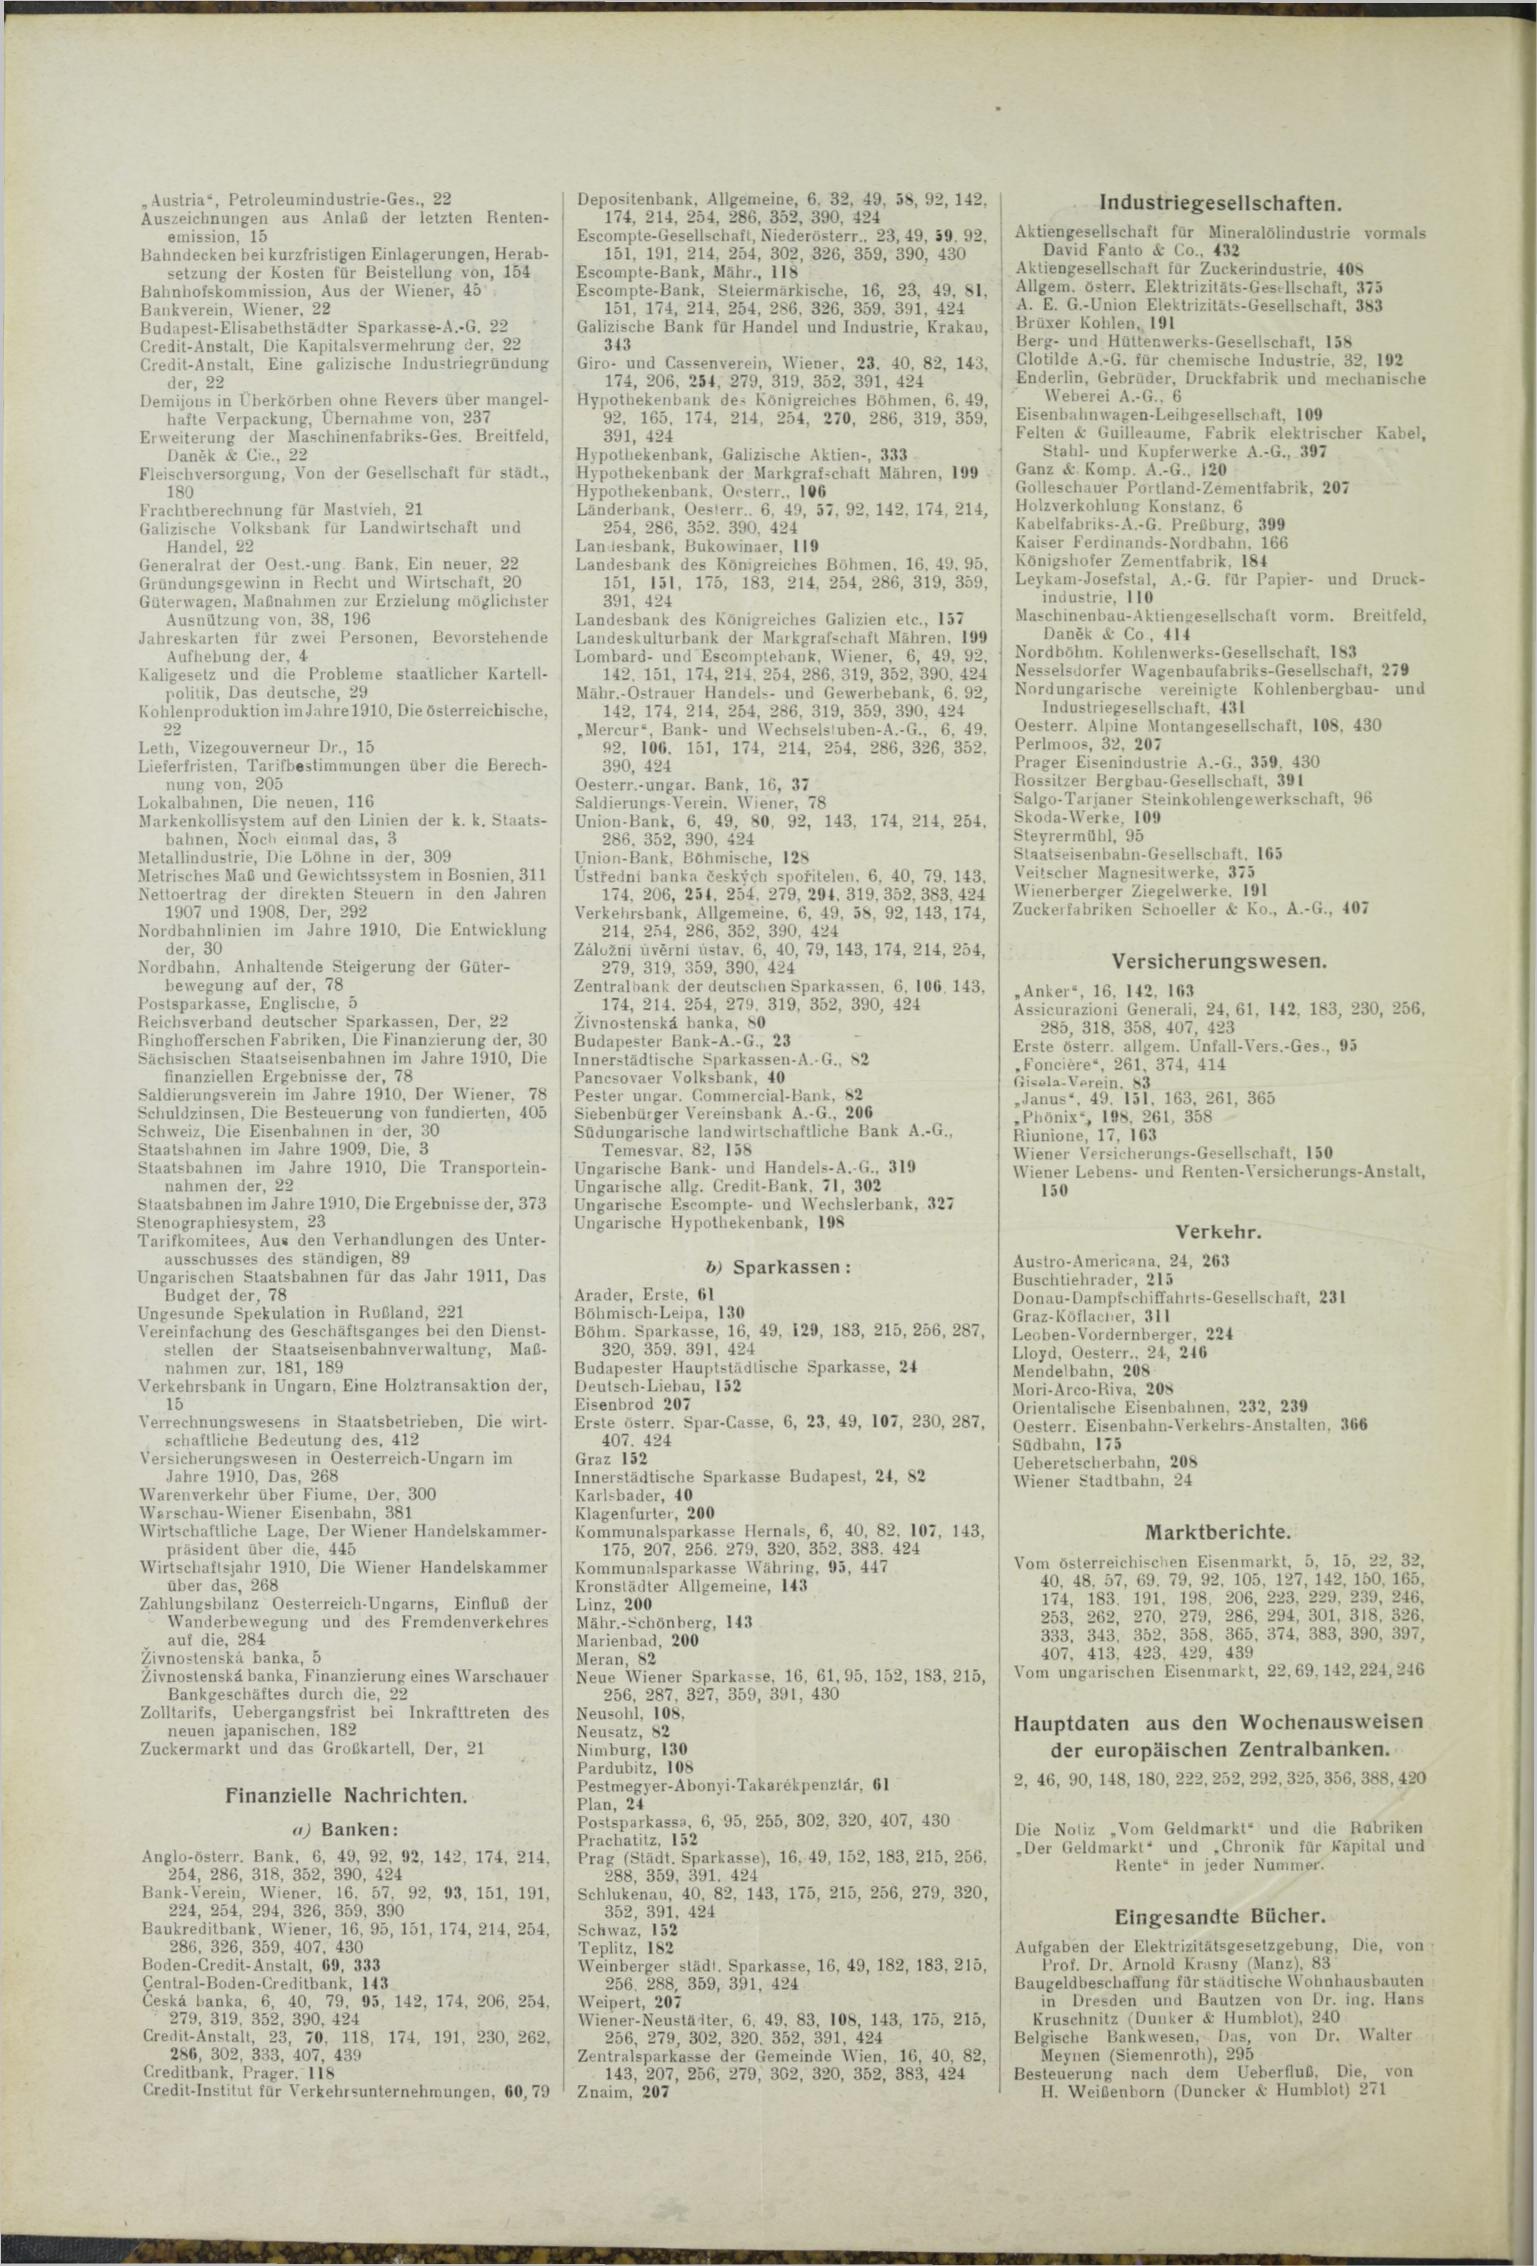 Der Tresor 05.08.1911 - Seite 10